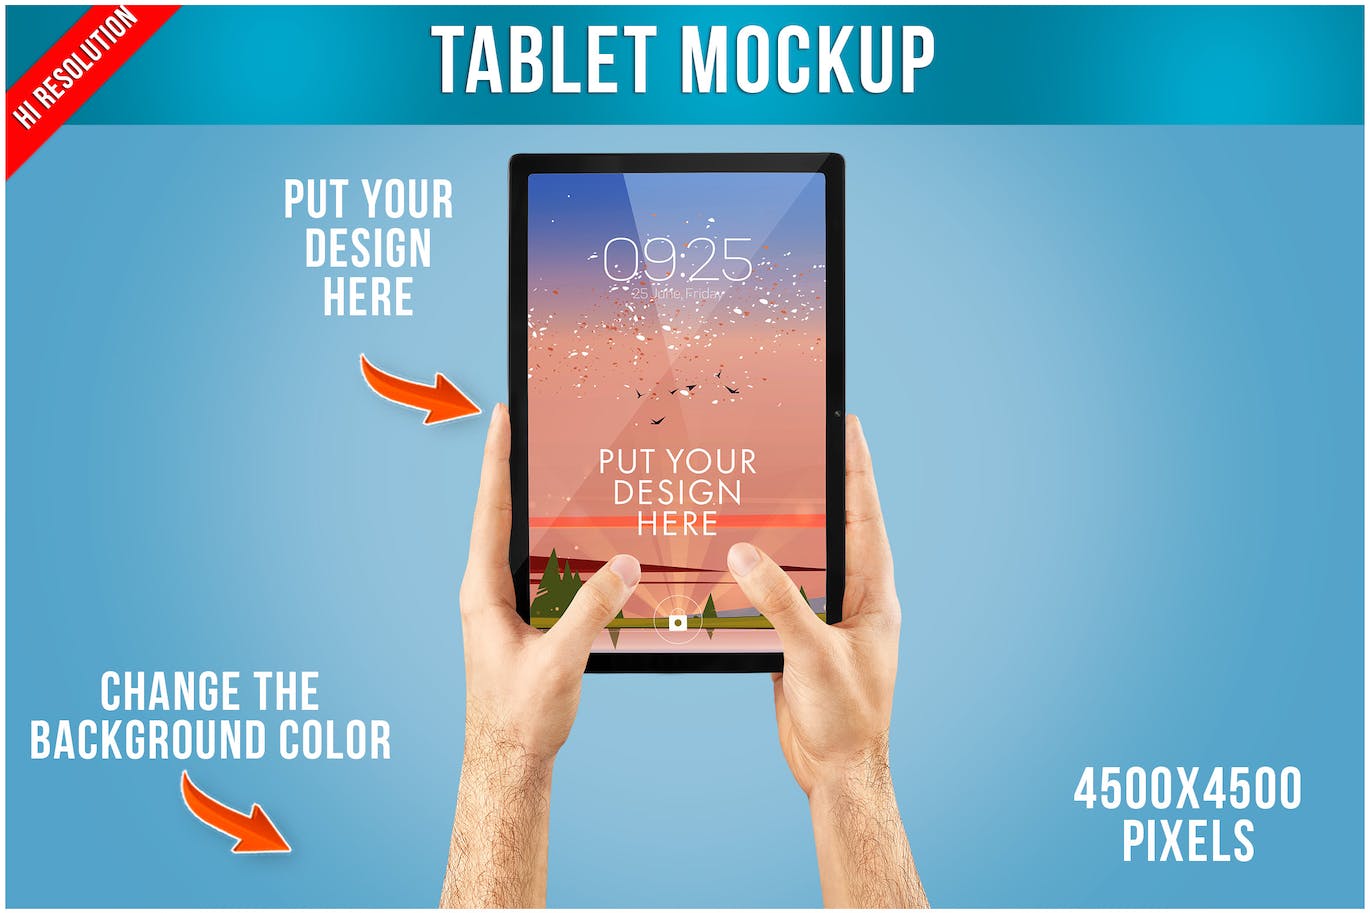 双手使用场景iPad平板电脑样机 Tablet Mockup in Hand Template 样机素材 第1张